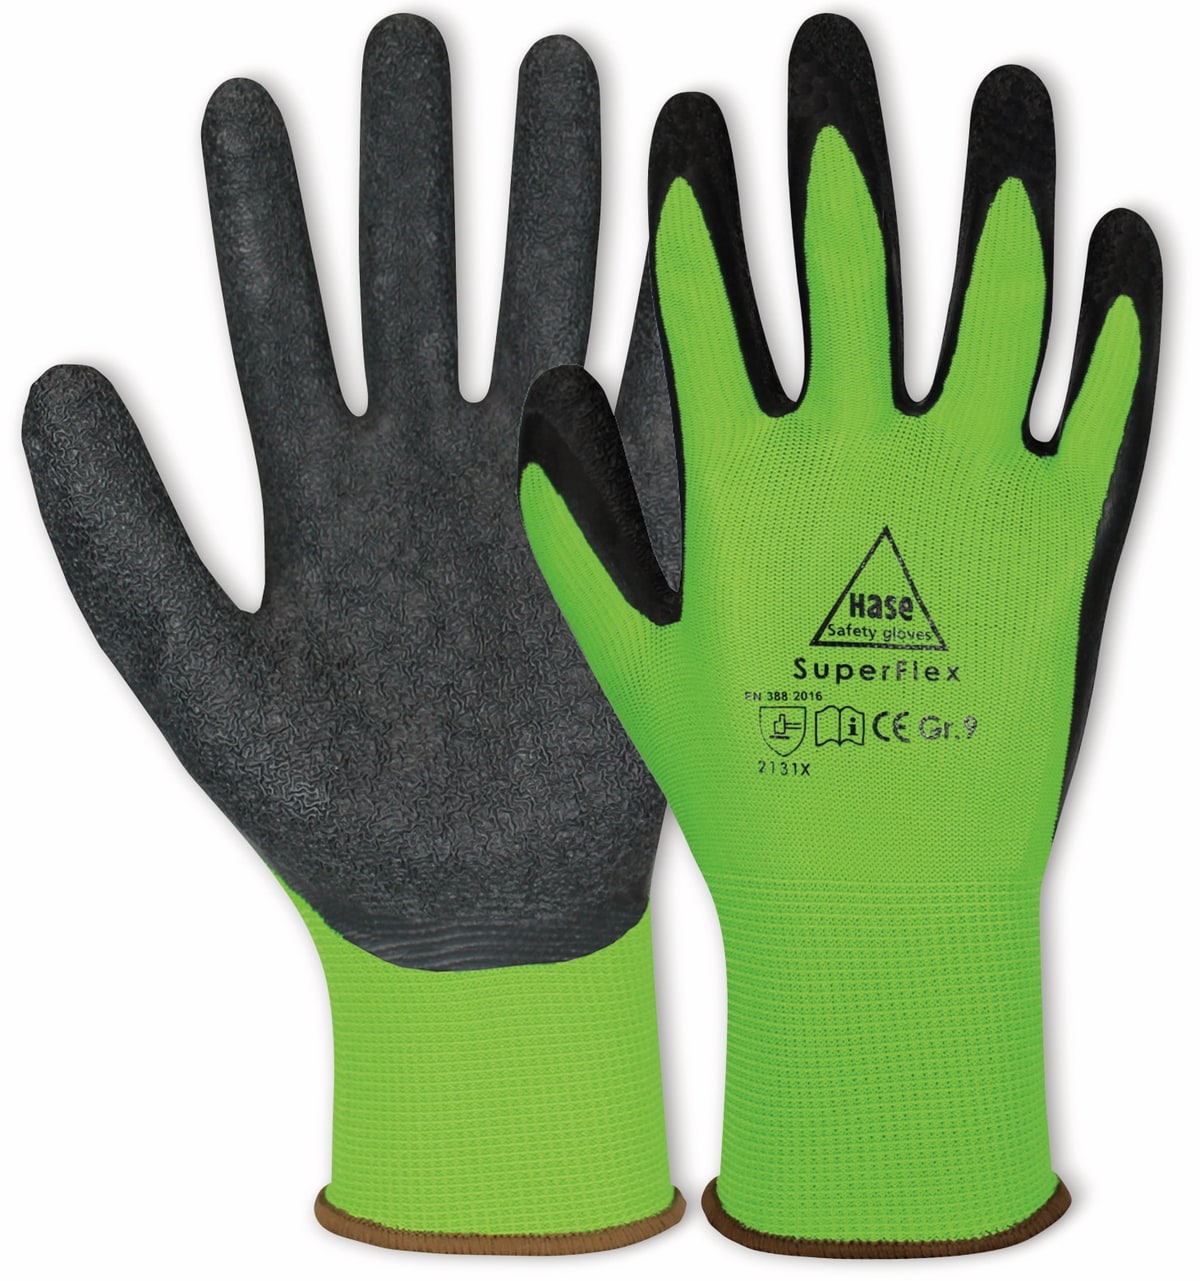 HASE SAFETY GLOVES Latex-Arbeitshandschuhe Superflex, EN 388, EN 420, Größe 8, grün/schwarz von Hase Safety gloves